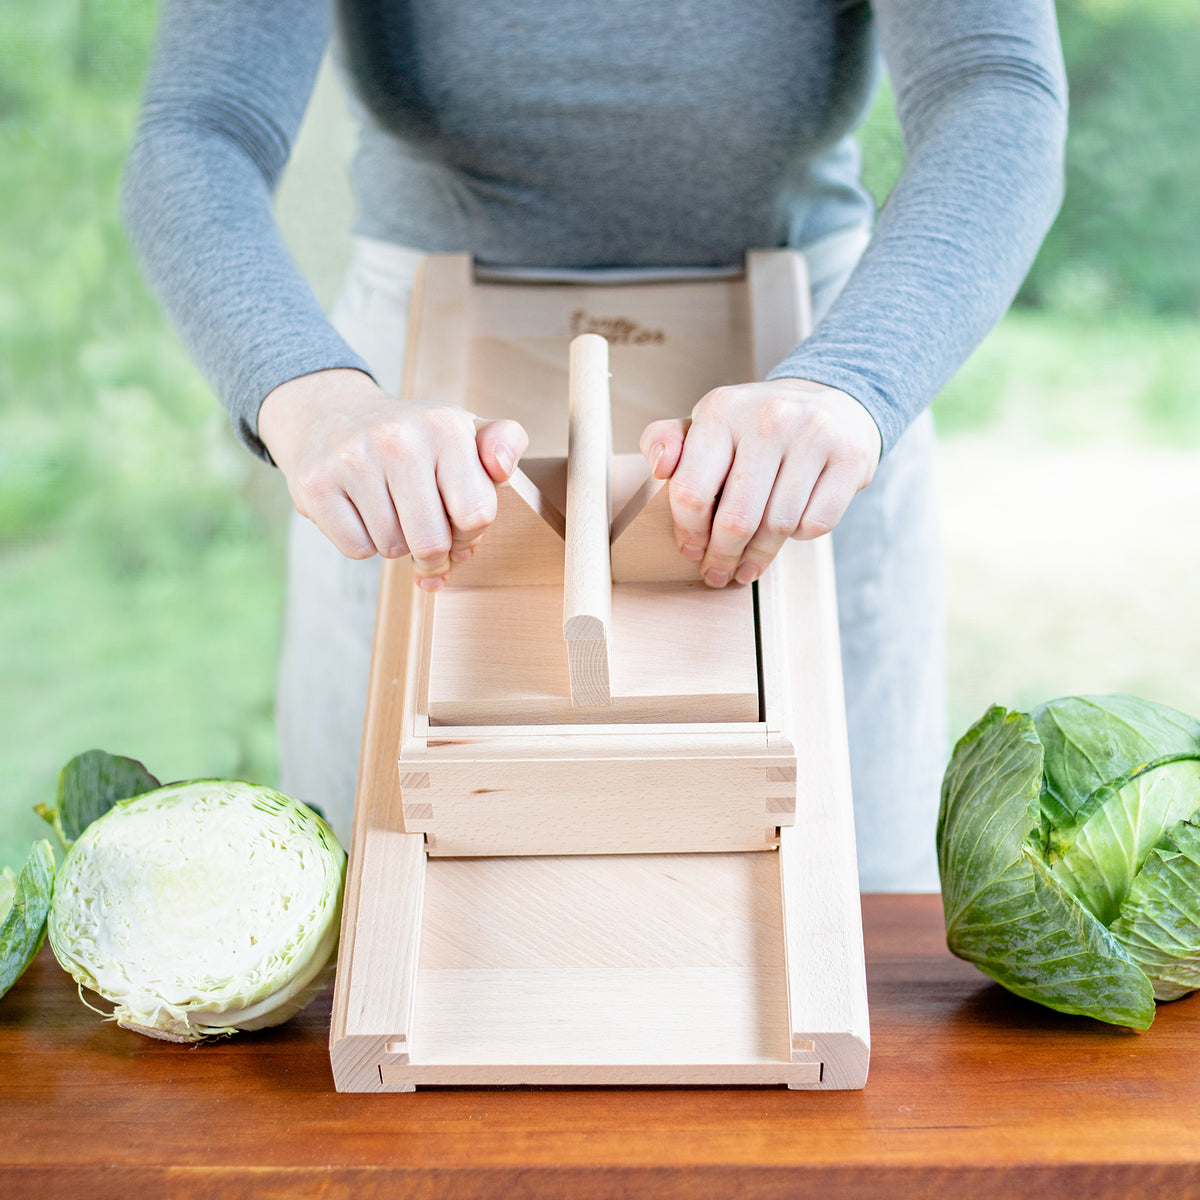 Manual Home Kitchen Vegetable Slicer Portable Shredder Potato Cabbage Cutter